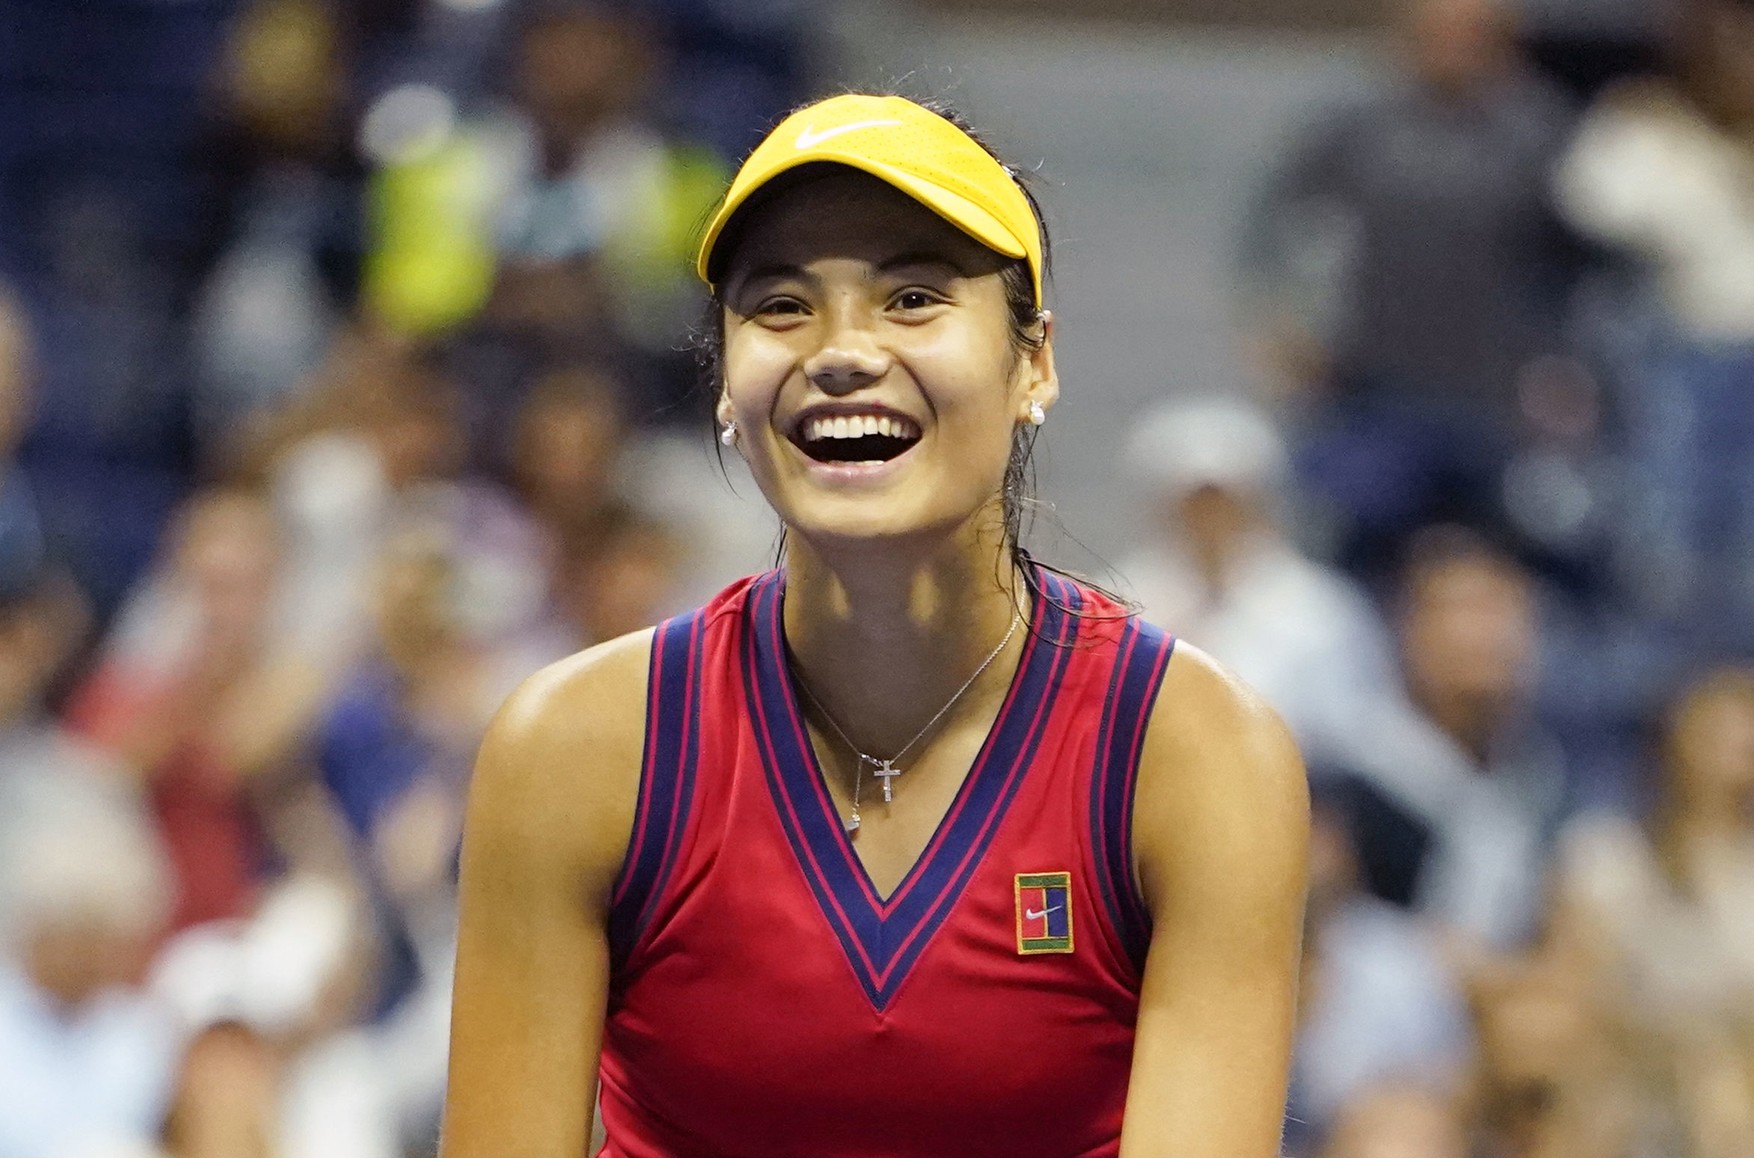 18-річна британська тенісистка Емма Радукану сенсаційно виграла US Open